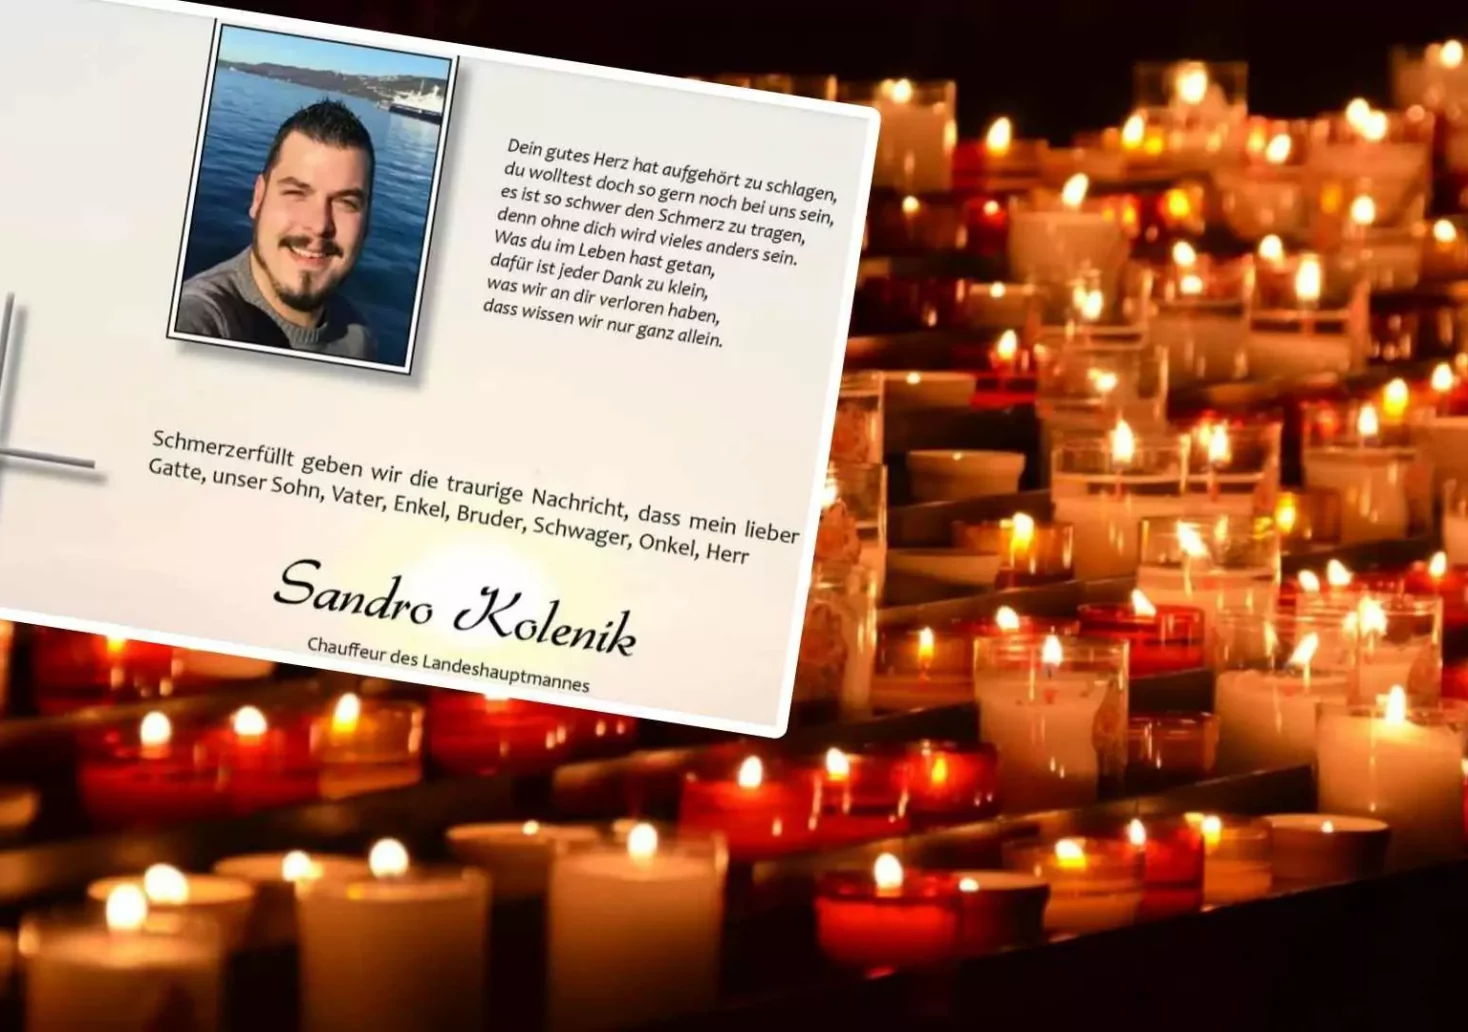 Foto in Beitrag von 5min.at: Zu sehen ist der Verstorbene in einer Fotomontage mit vielen Kerzen.